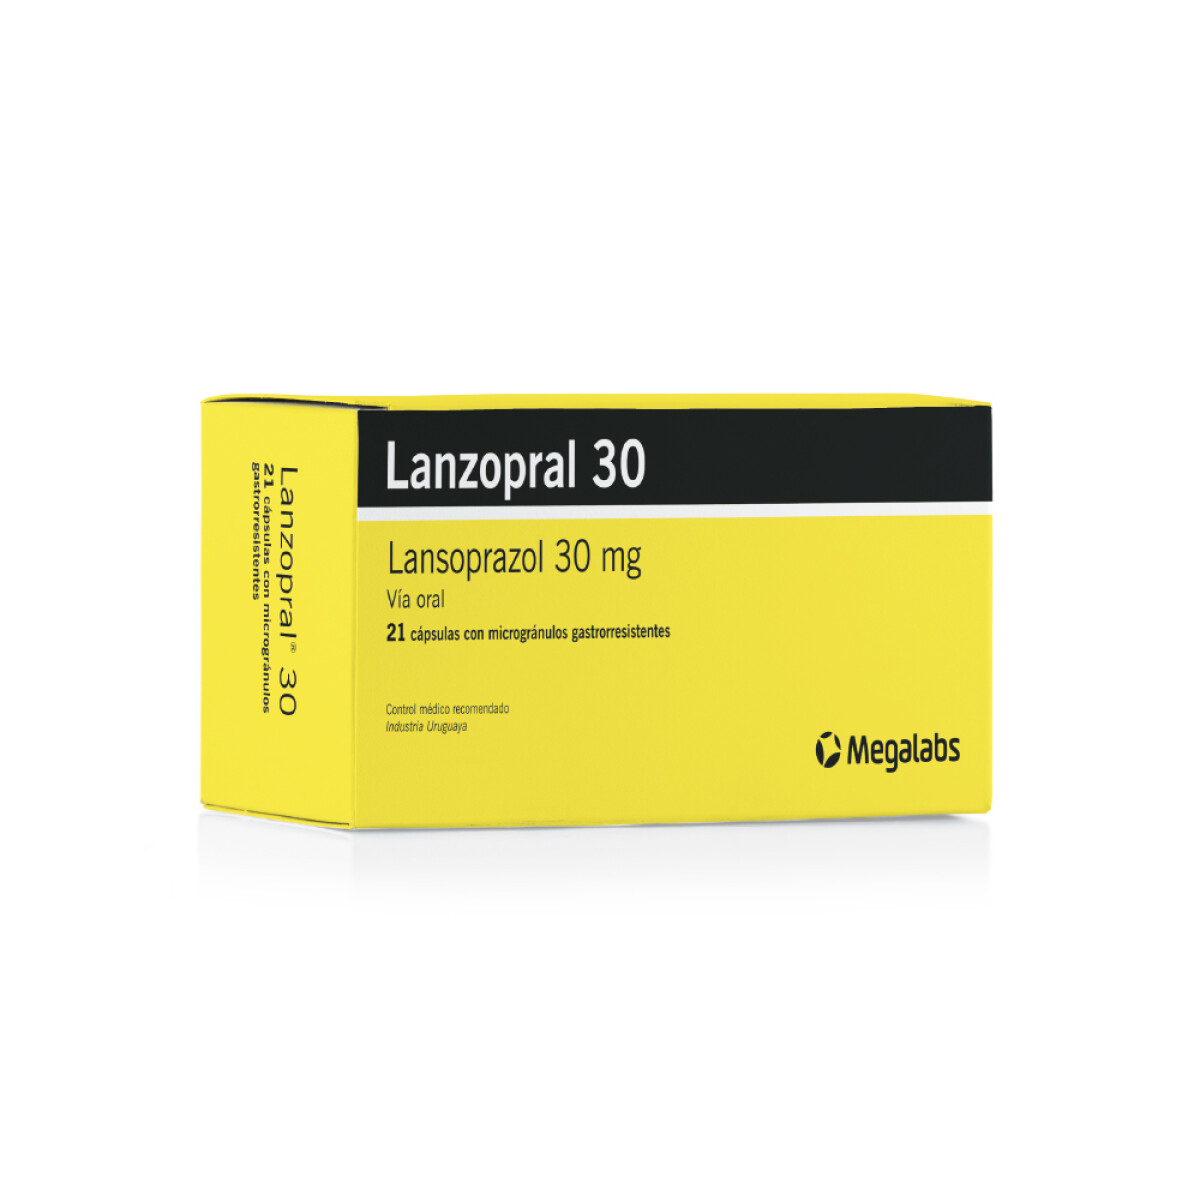 Lanzopral 30 Mg 